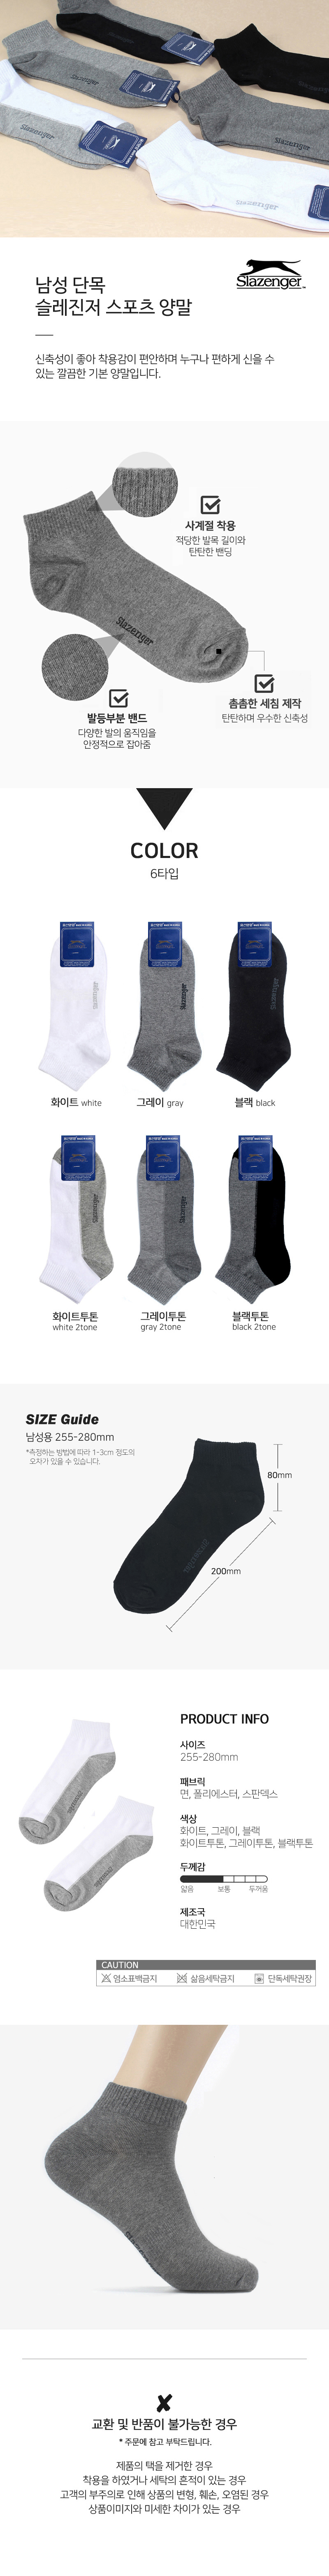 socks_00001.jpg